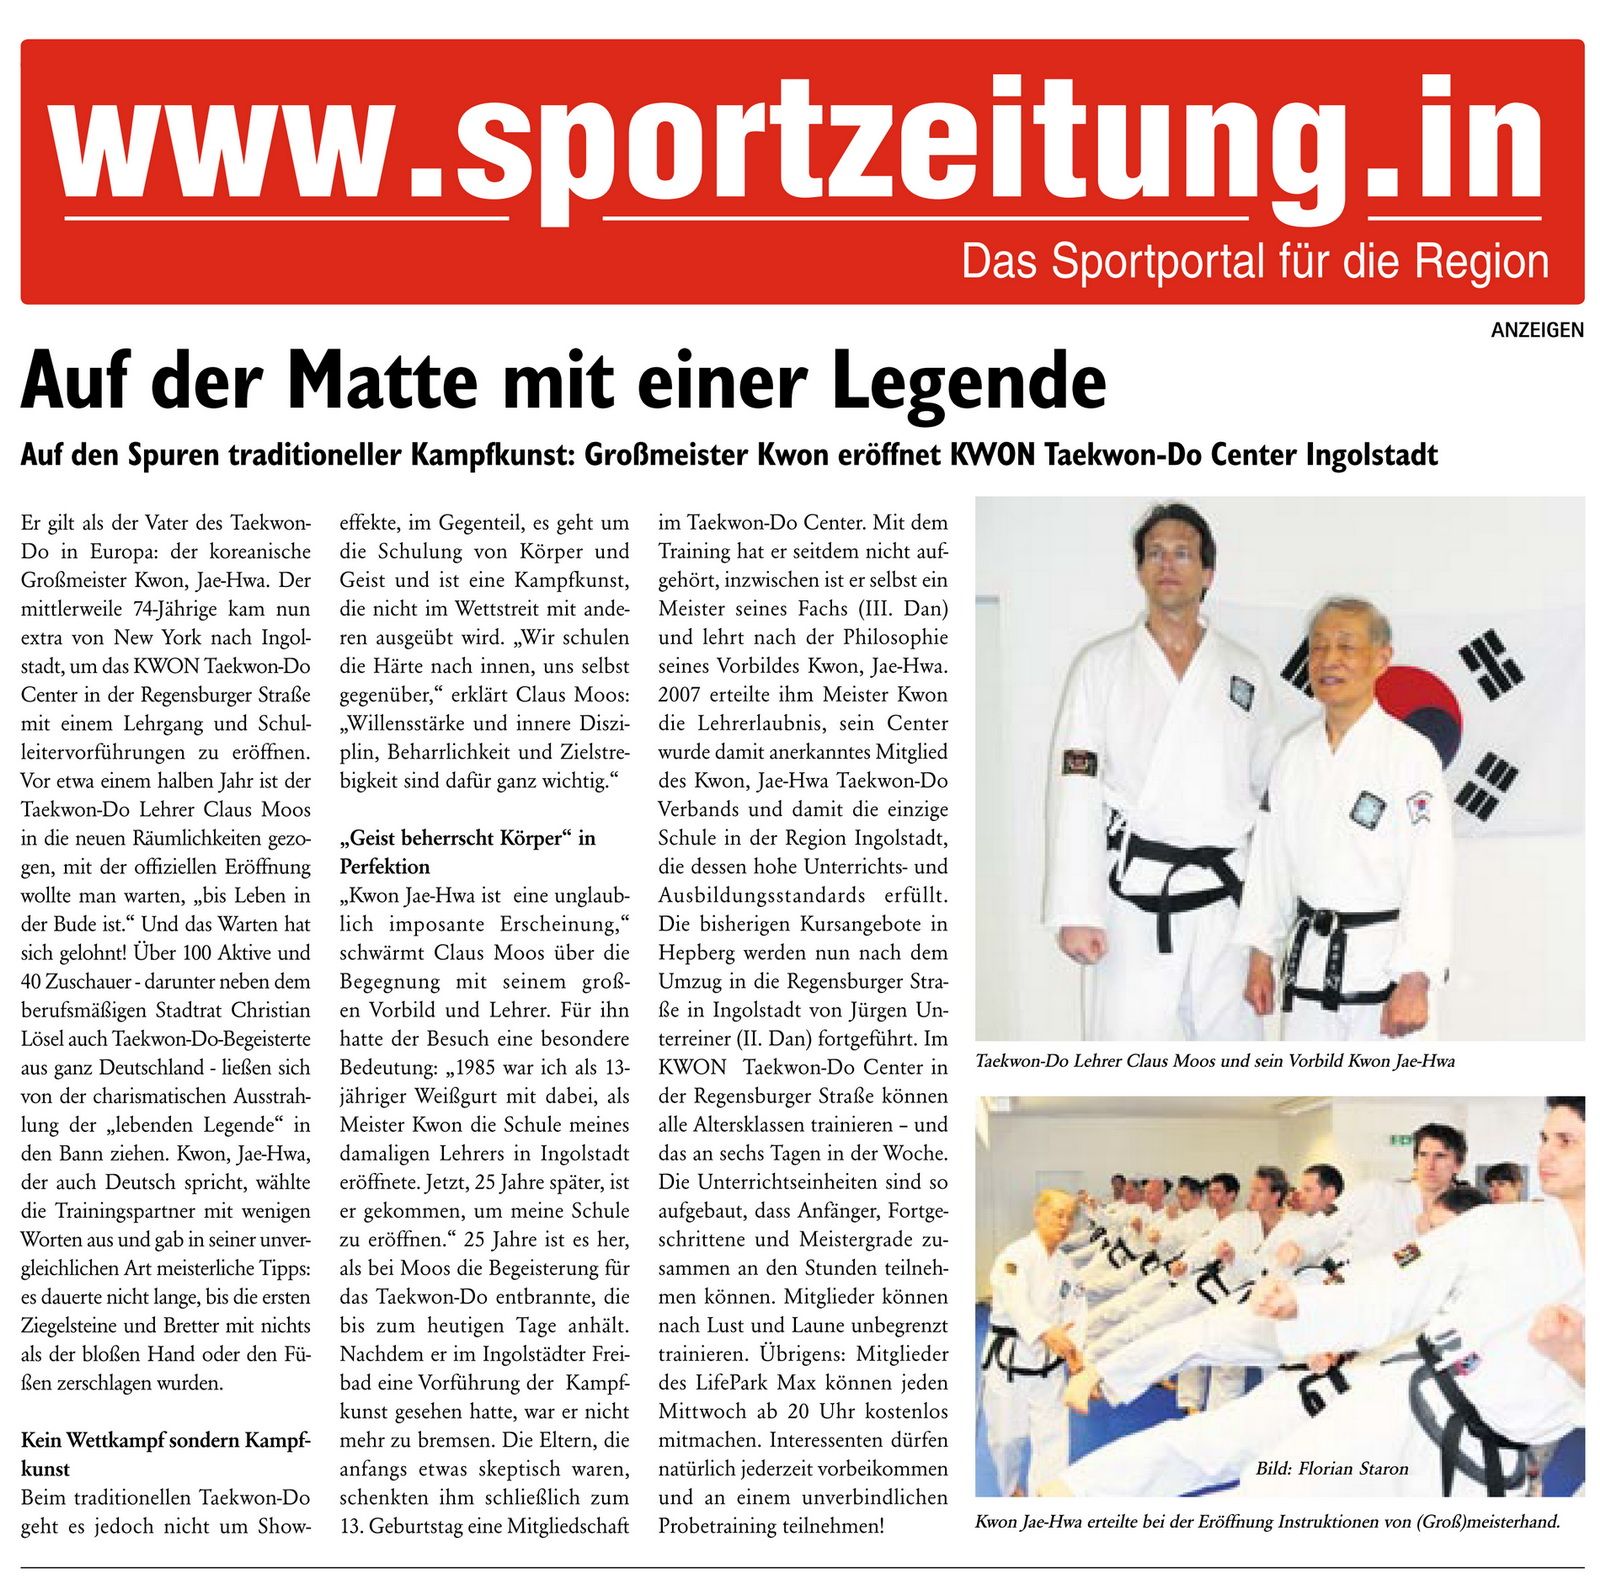 Blickpunkt Wochenende (Sportzeitung IN), 12. März 2011